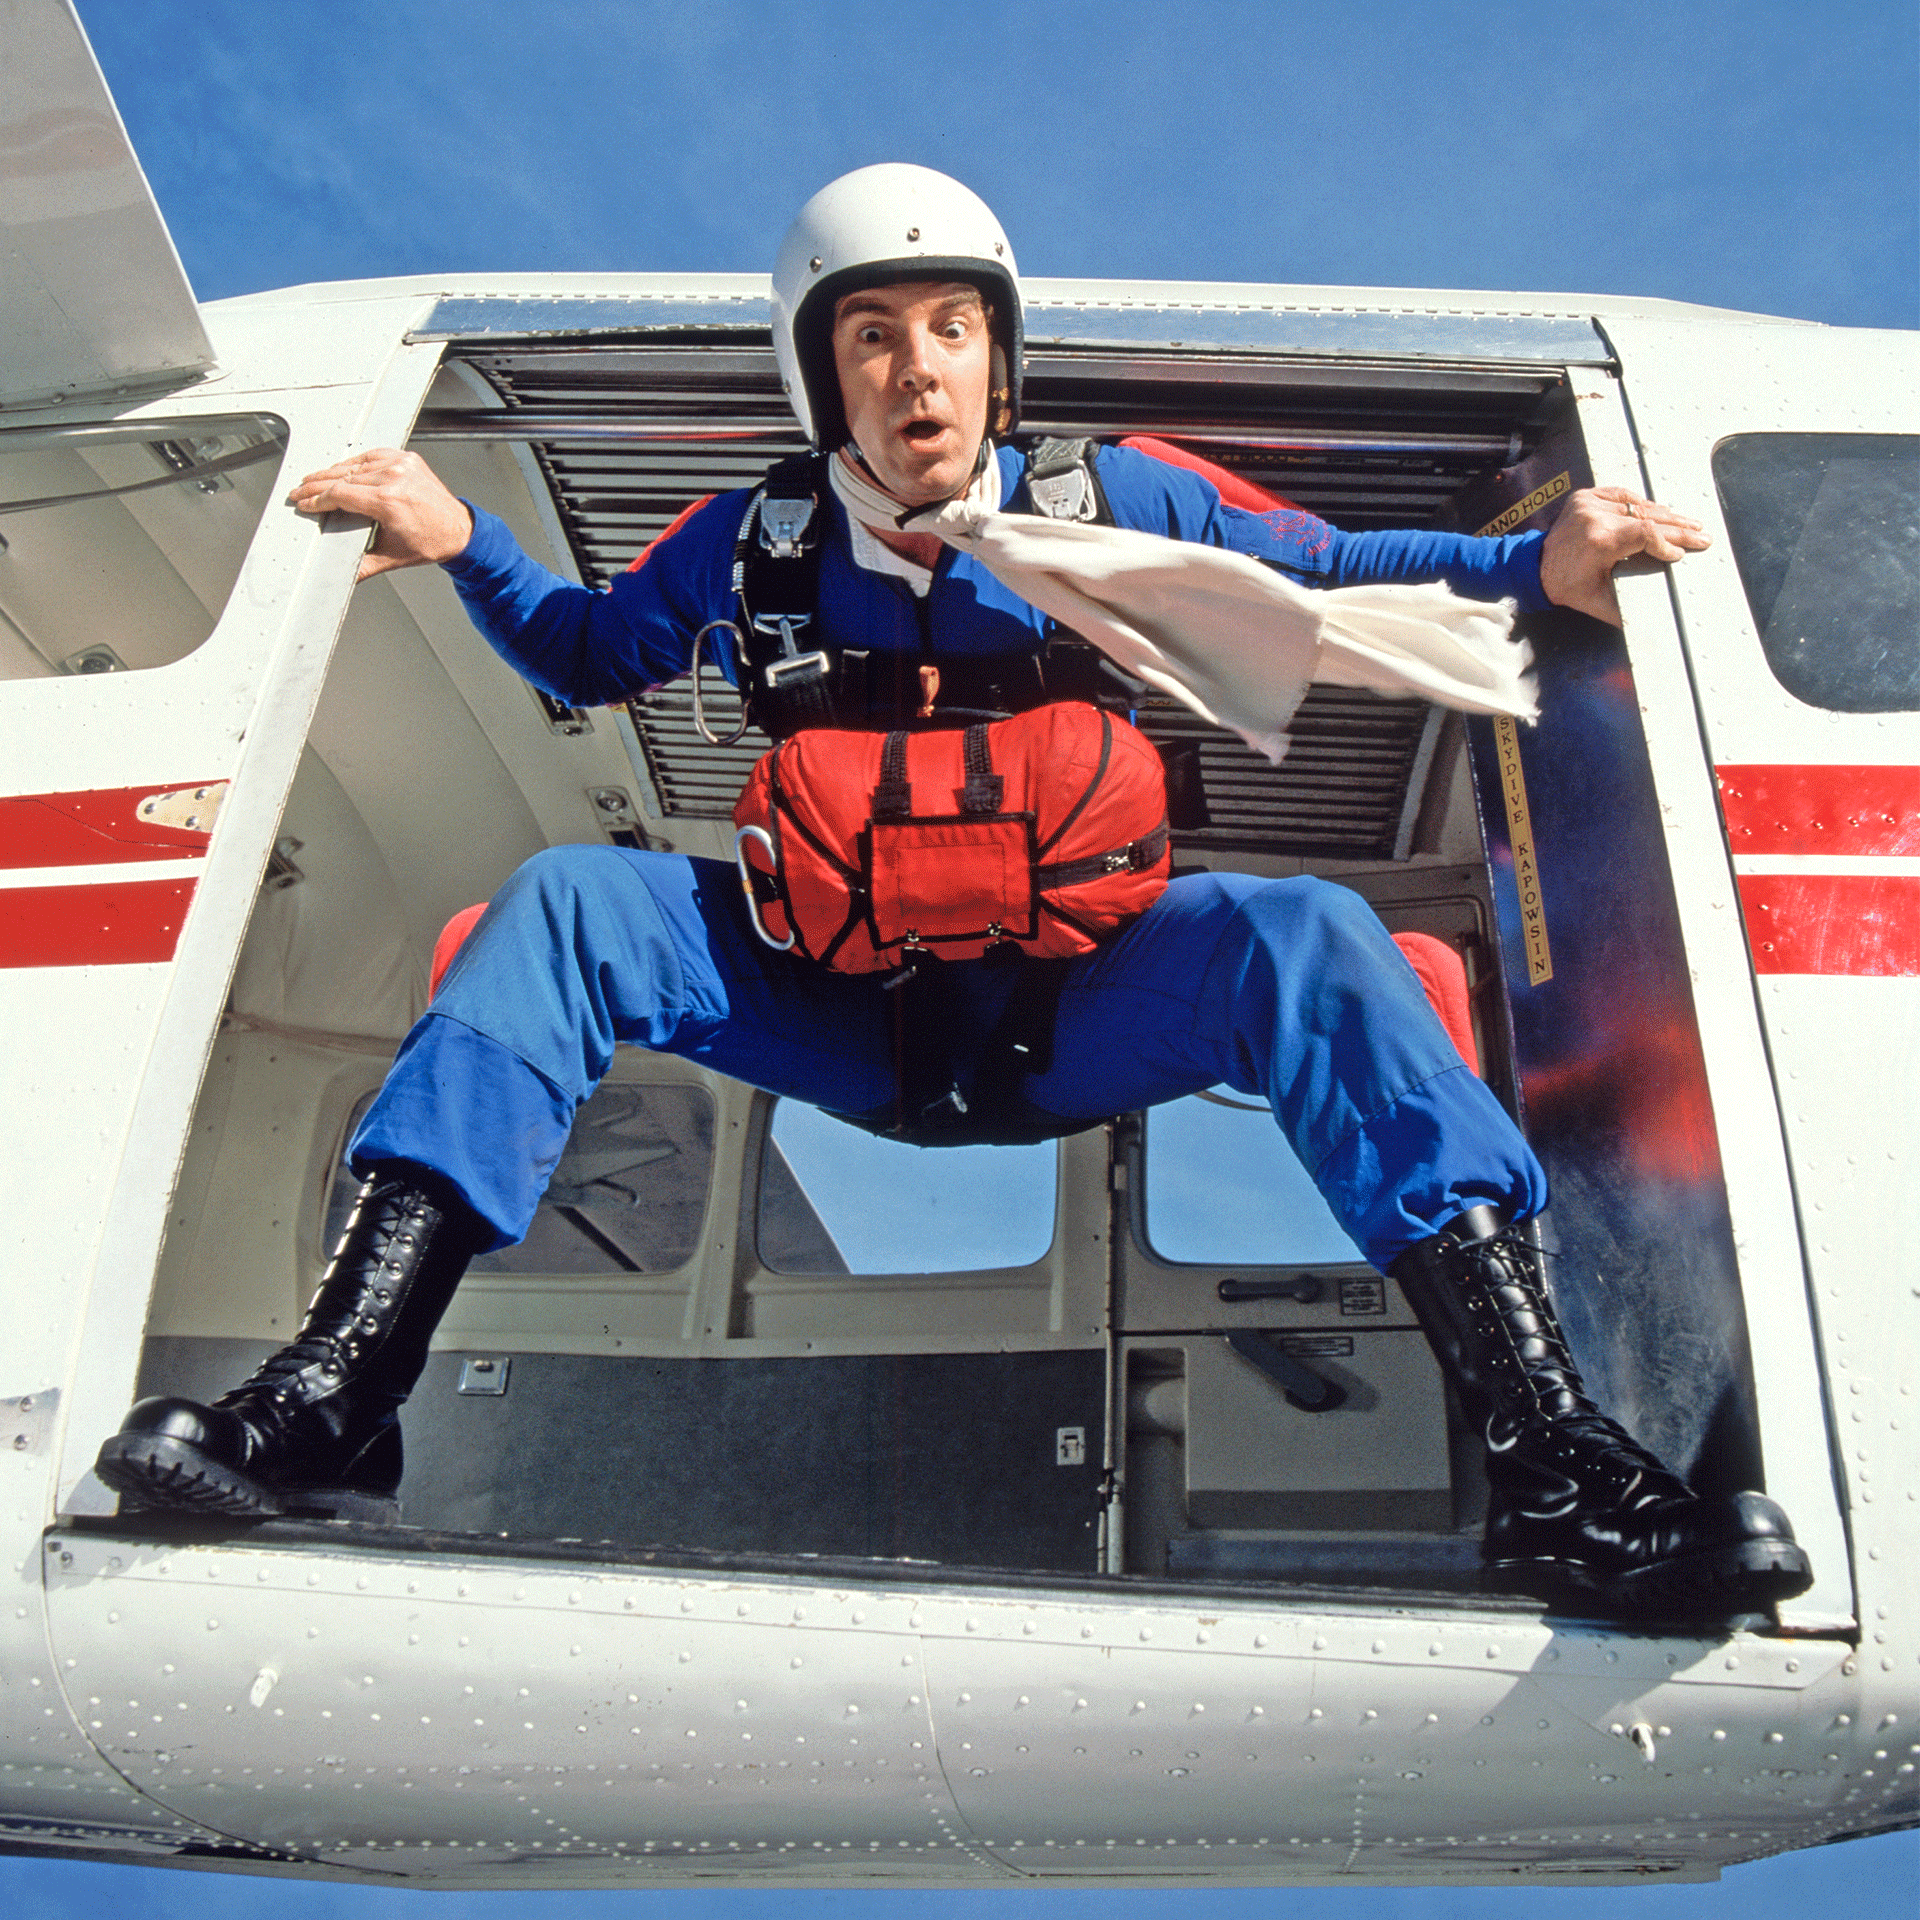 Ein Fallschirmspringer im blauen Overall steht in einem Kleinflugzeug in der Tür und steht kurz vor dem Sprung